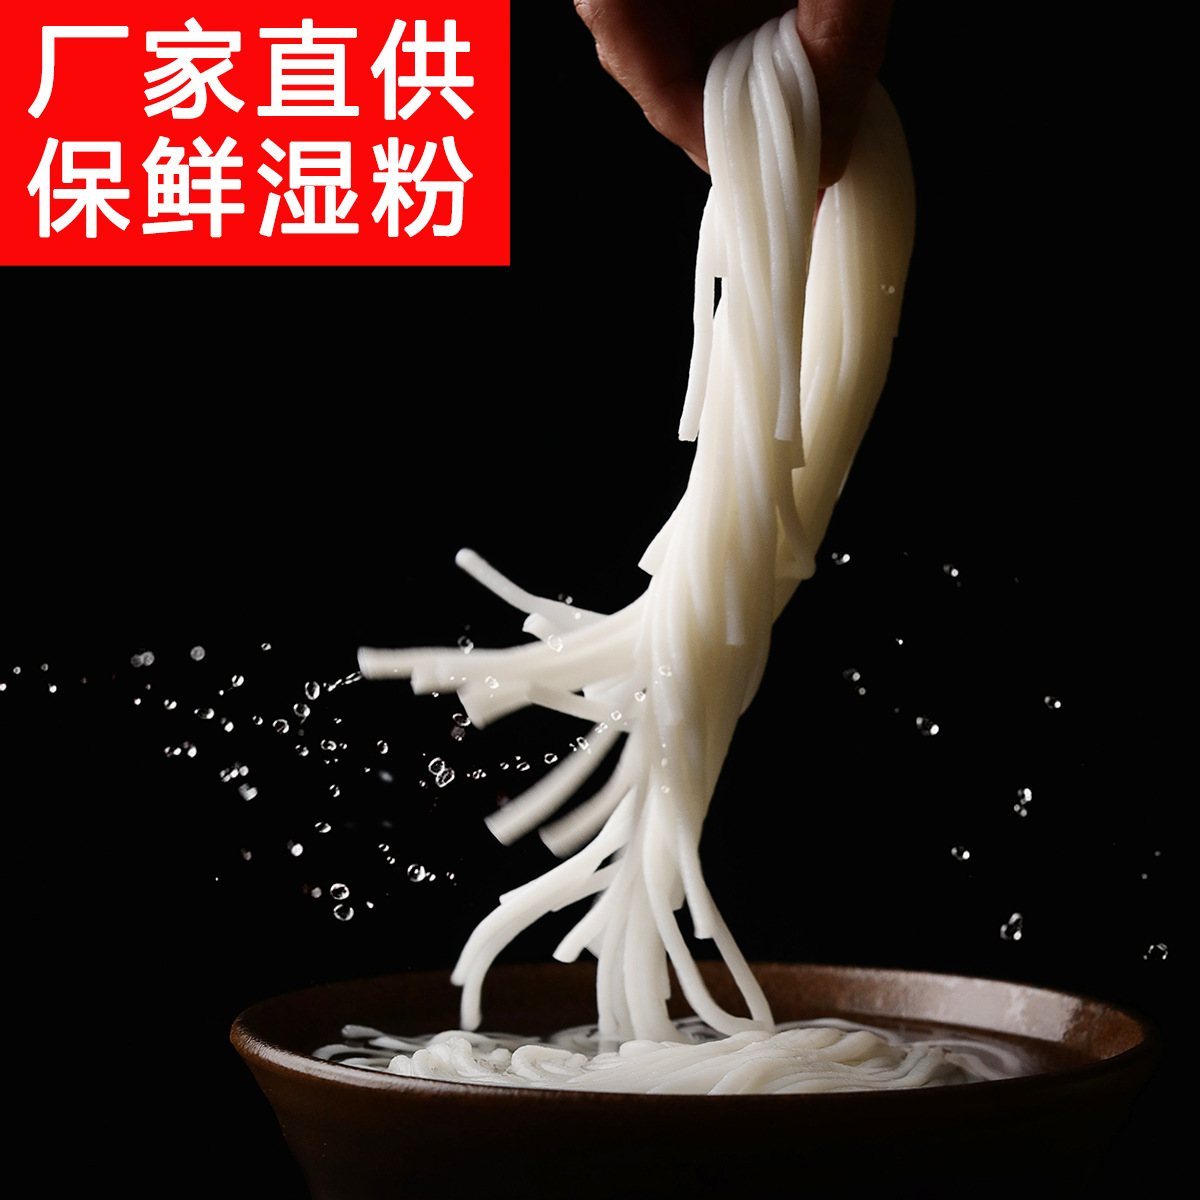 厂家桂林米粉速食方便湿米粉保鲜米线独立袋装200克*30袋/箱